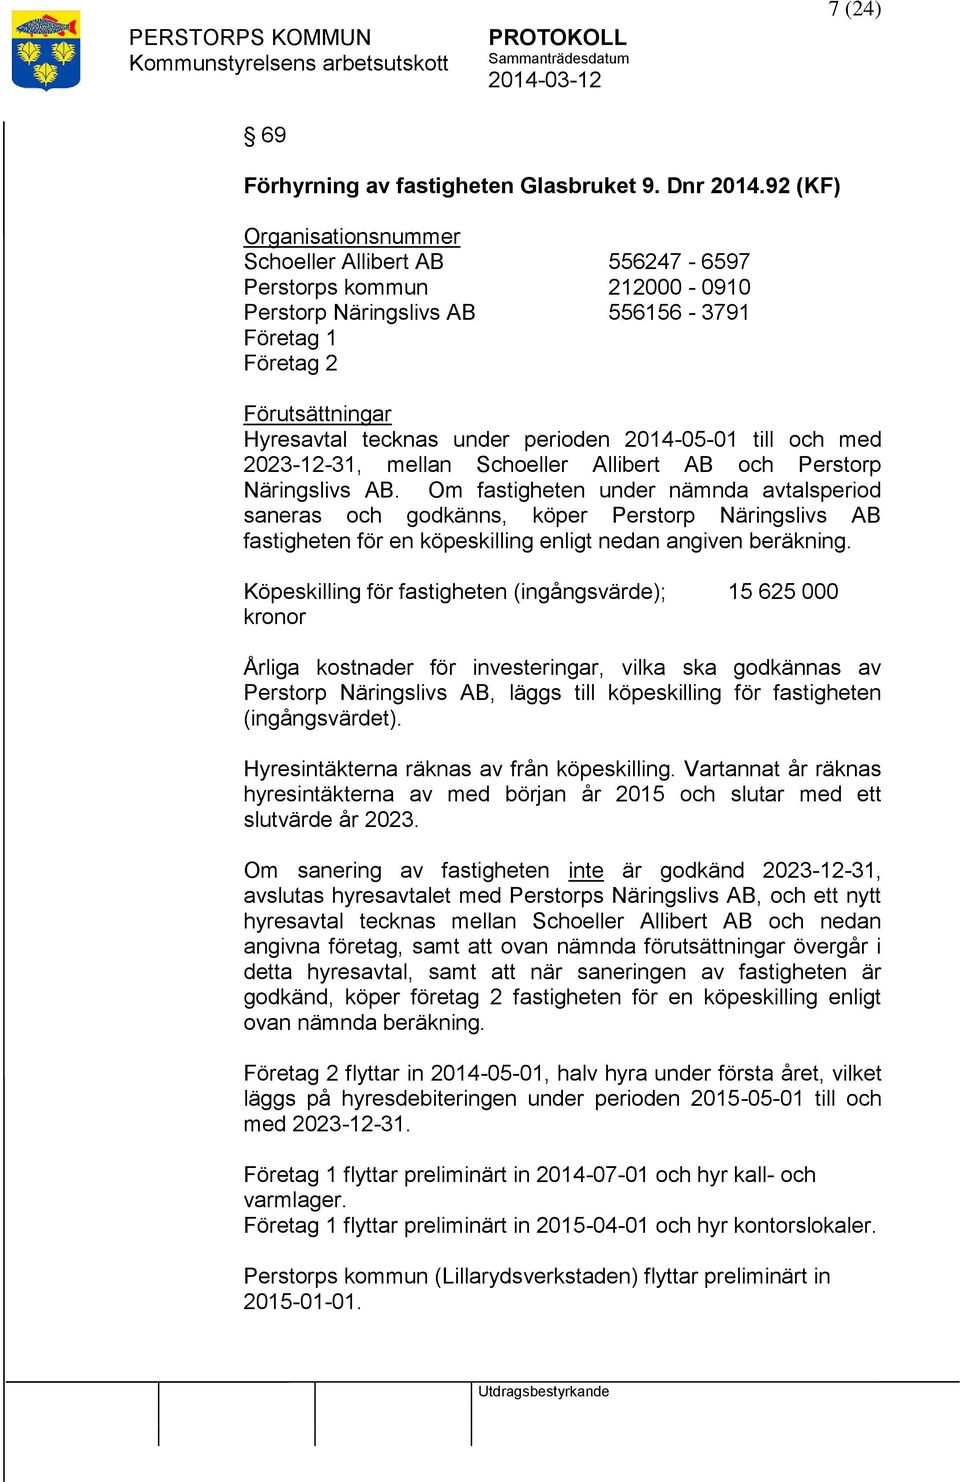 2014-05-01 till och med 2023-12-31, mellan Schoeller Allibert AB och Perstorp Näringslivs AB.